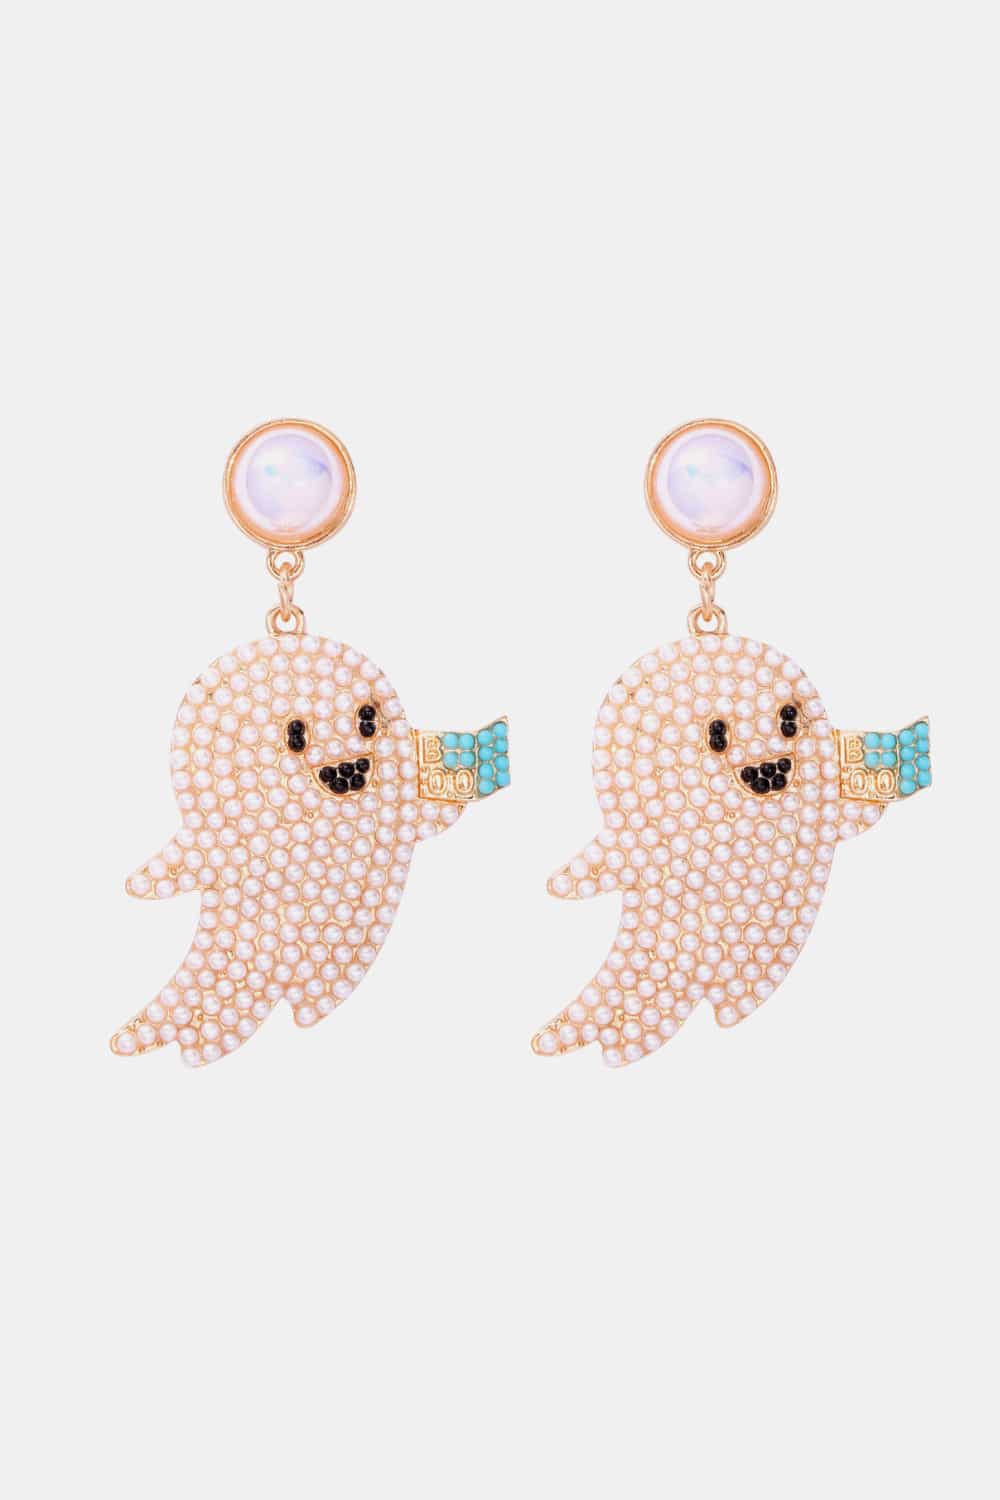 Ghost Shape Synthetic Pearl Dangle Earrings - White / One Size - Women’s Jewelry - Earrings - 7 - 2024